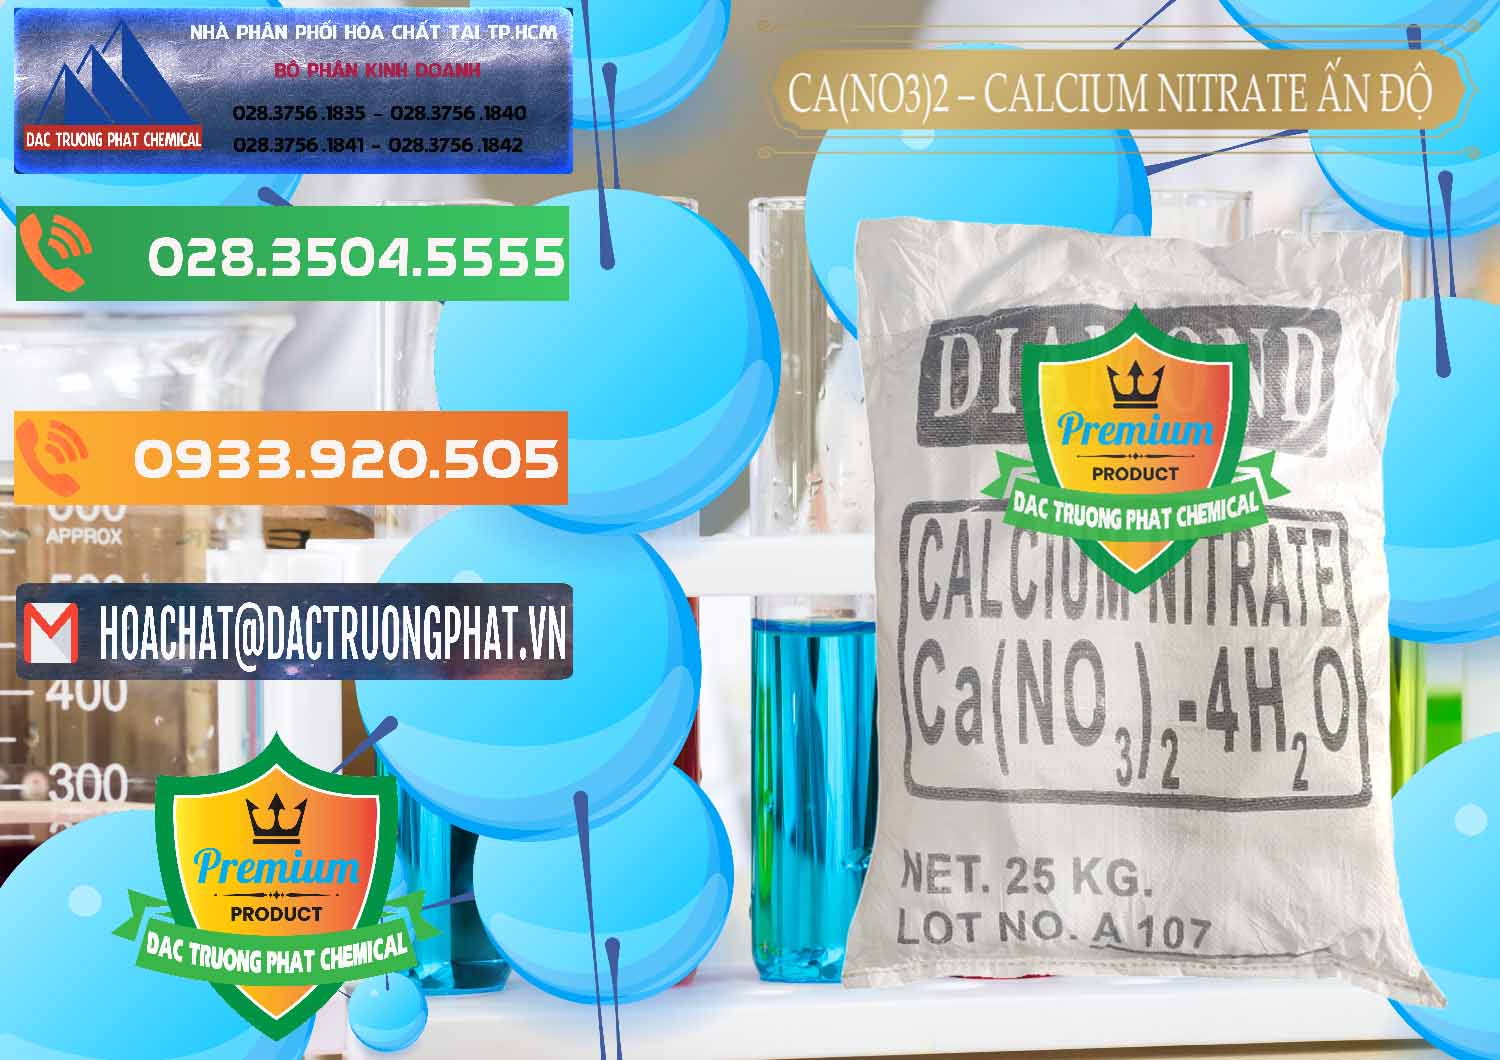 Chuyên phân phối & bán CA(NO3)2 – Calcium Nitrate Ấn Độ India - 0038 - Công ty chuyên kinh doanh - phân phối hóa chất tại TP.HCM - hoachatxulynuoc.com.vn